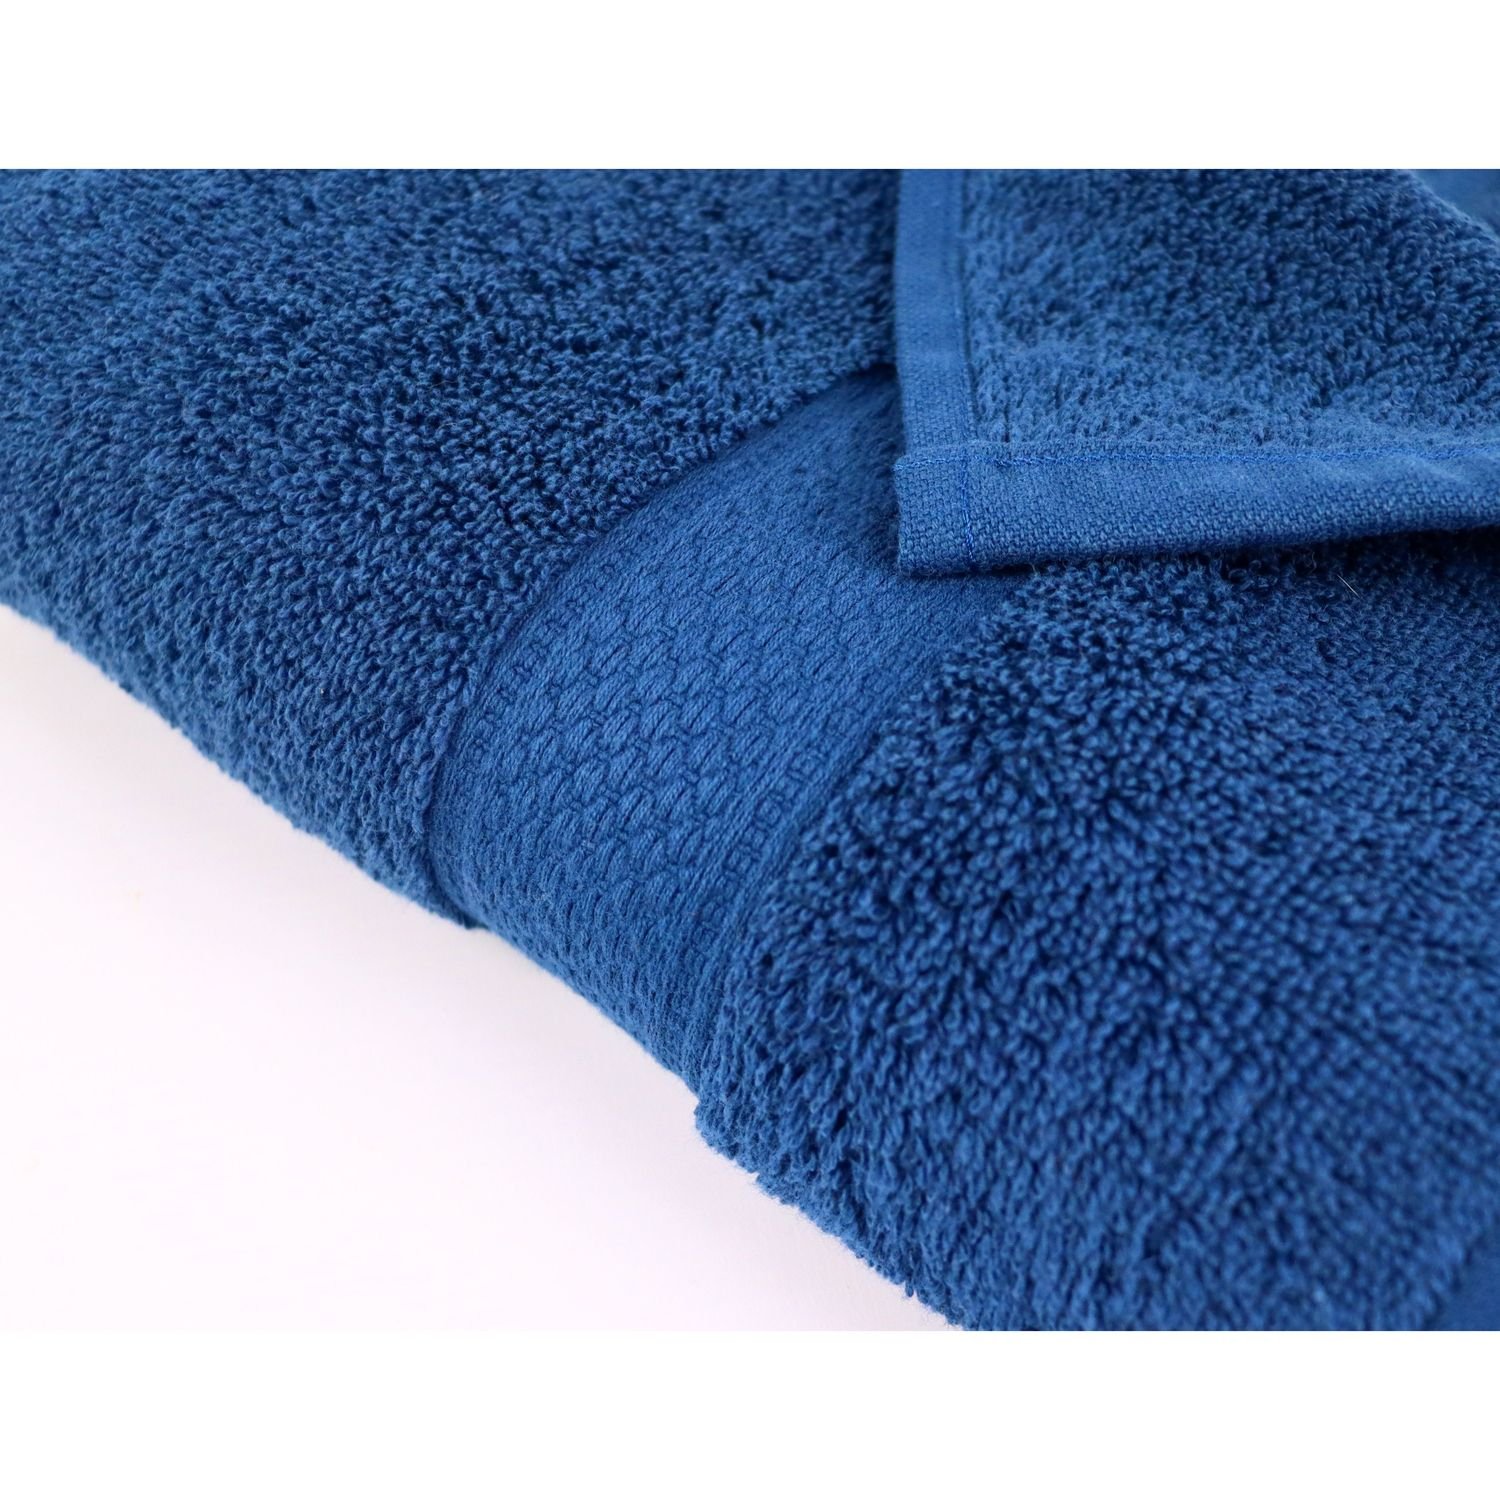 Рушник Izzihome Colorful Lacivert махровий 100х50 см темно-синій (39453) - фото 4